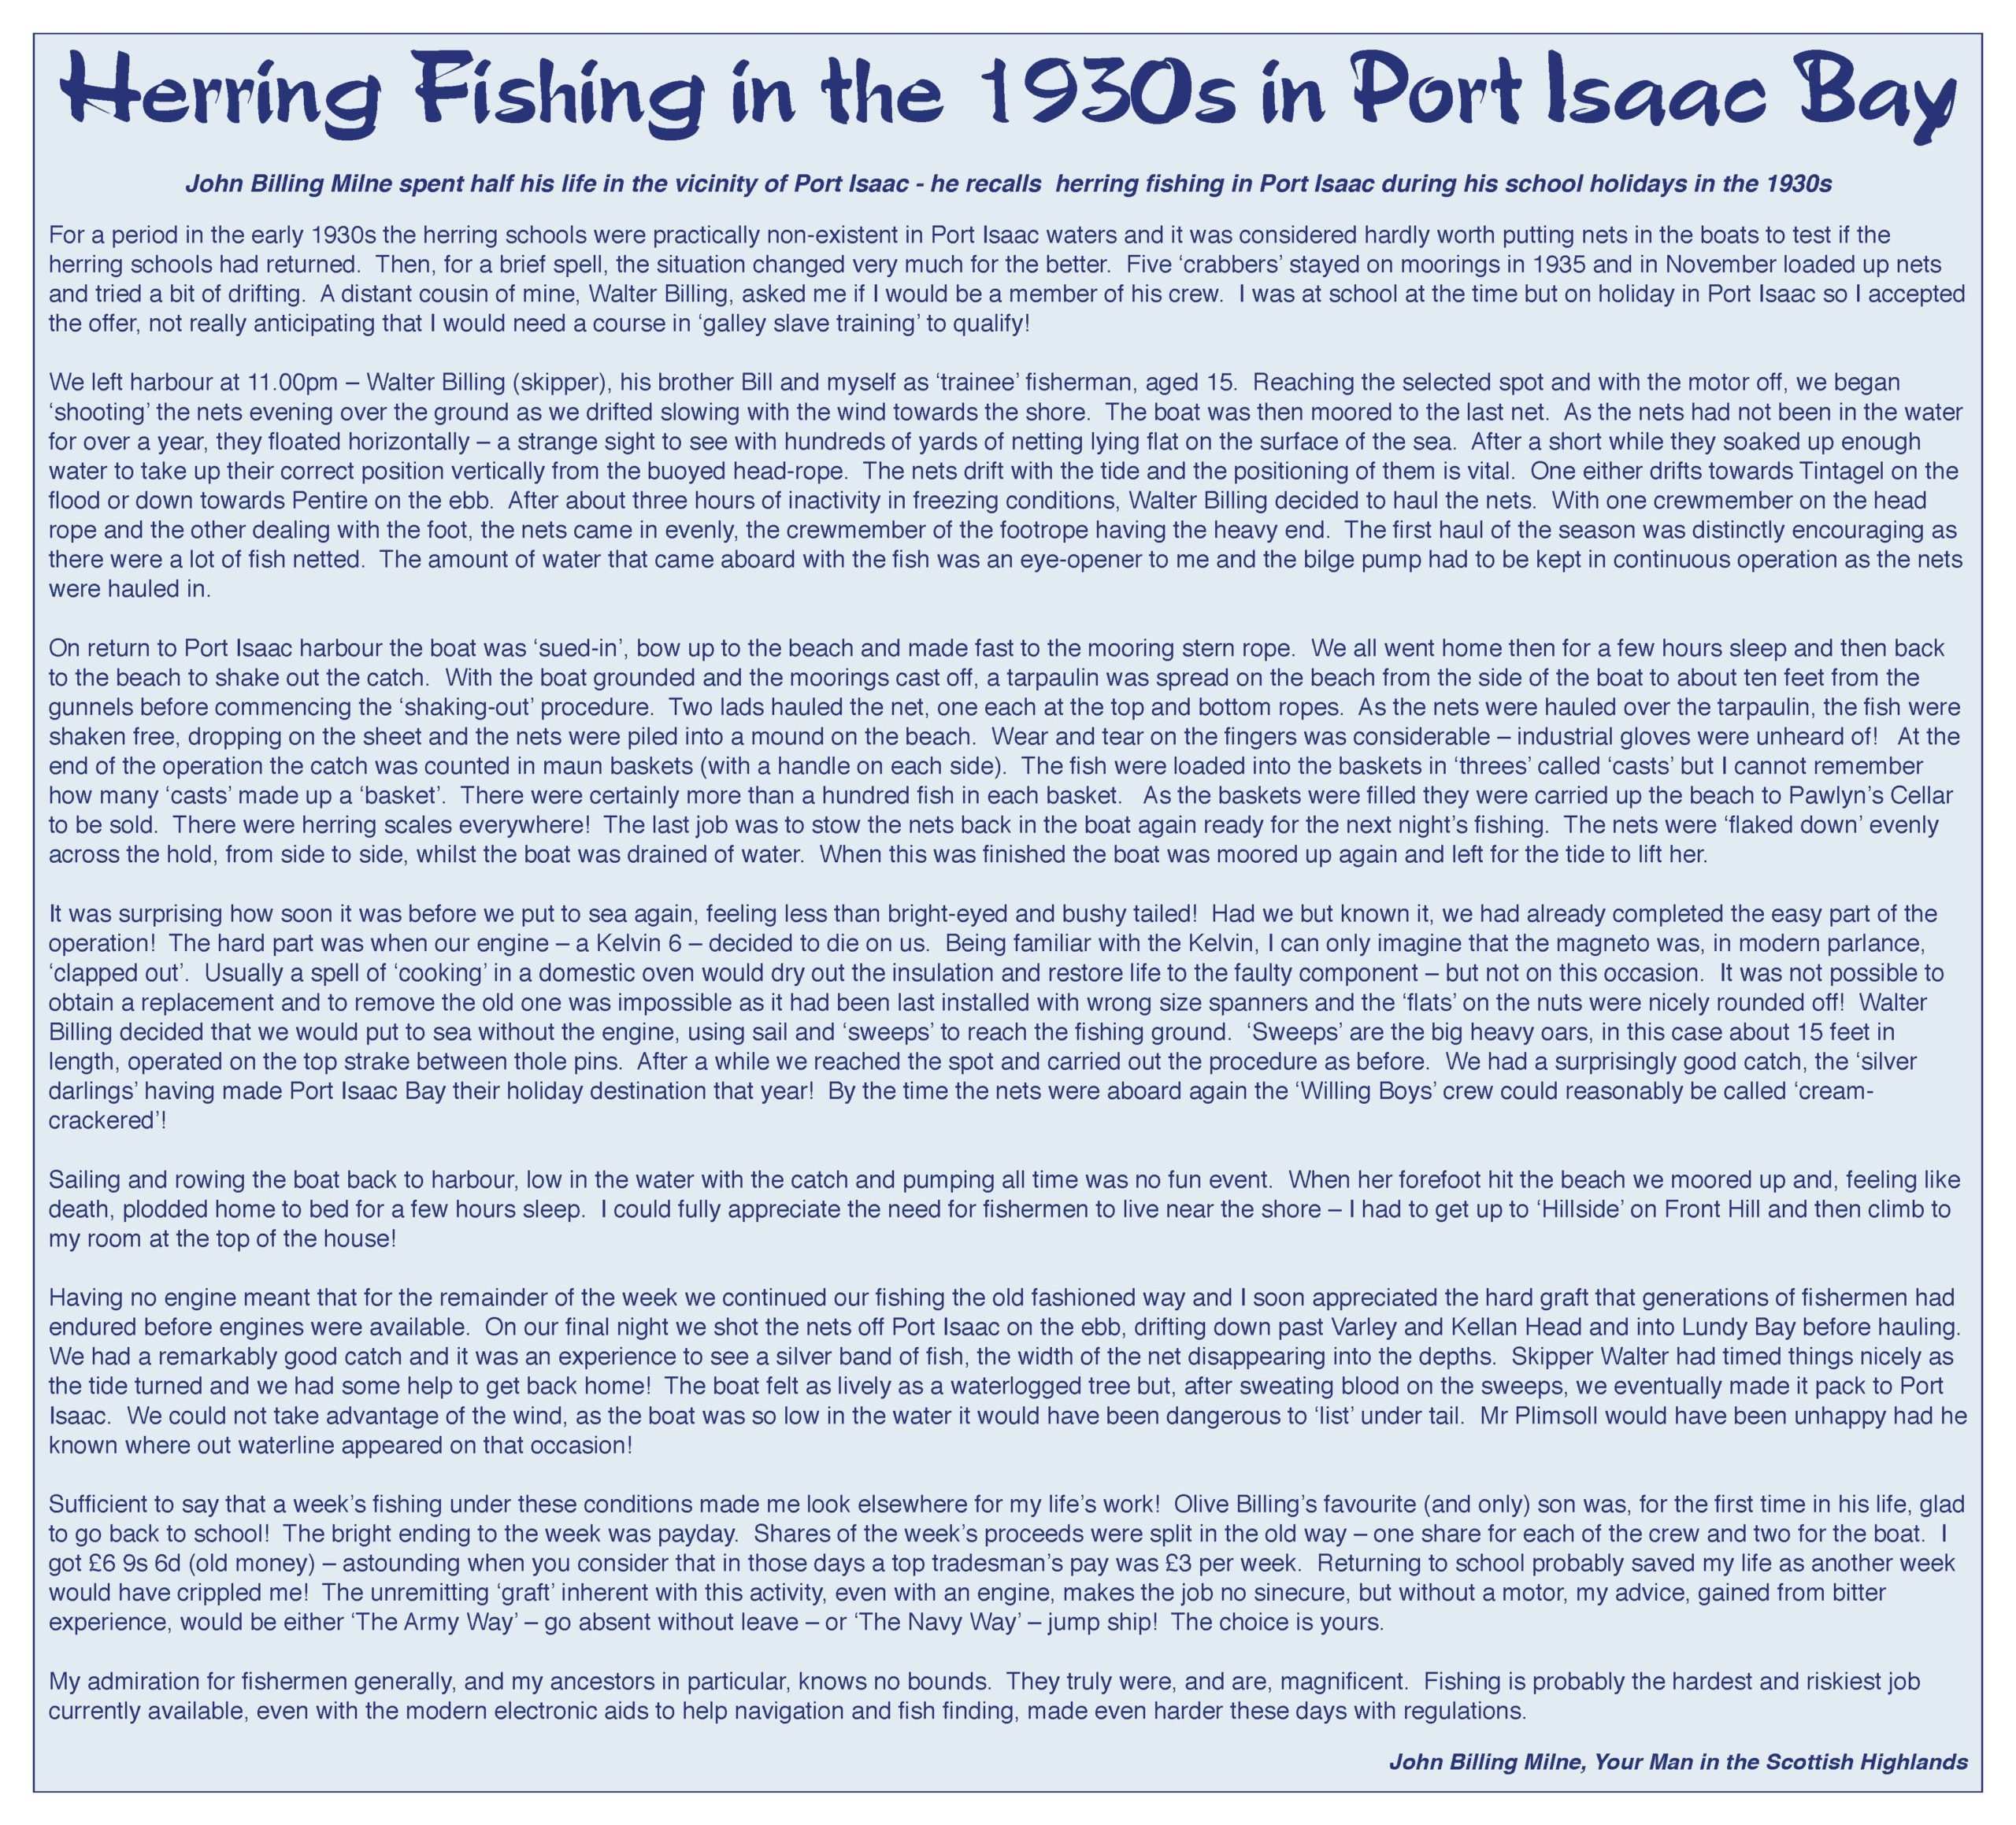 Herring fishing in the 1930s